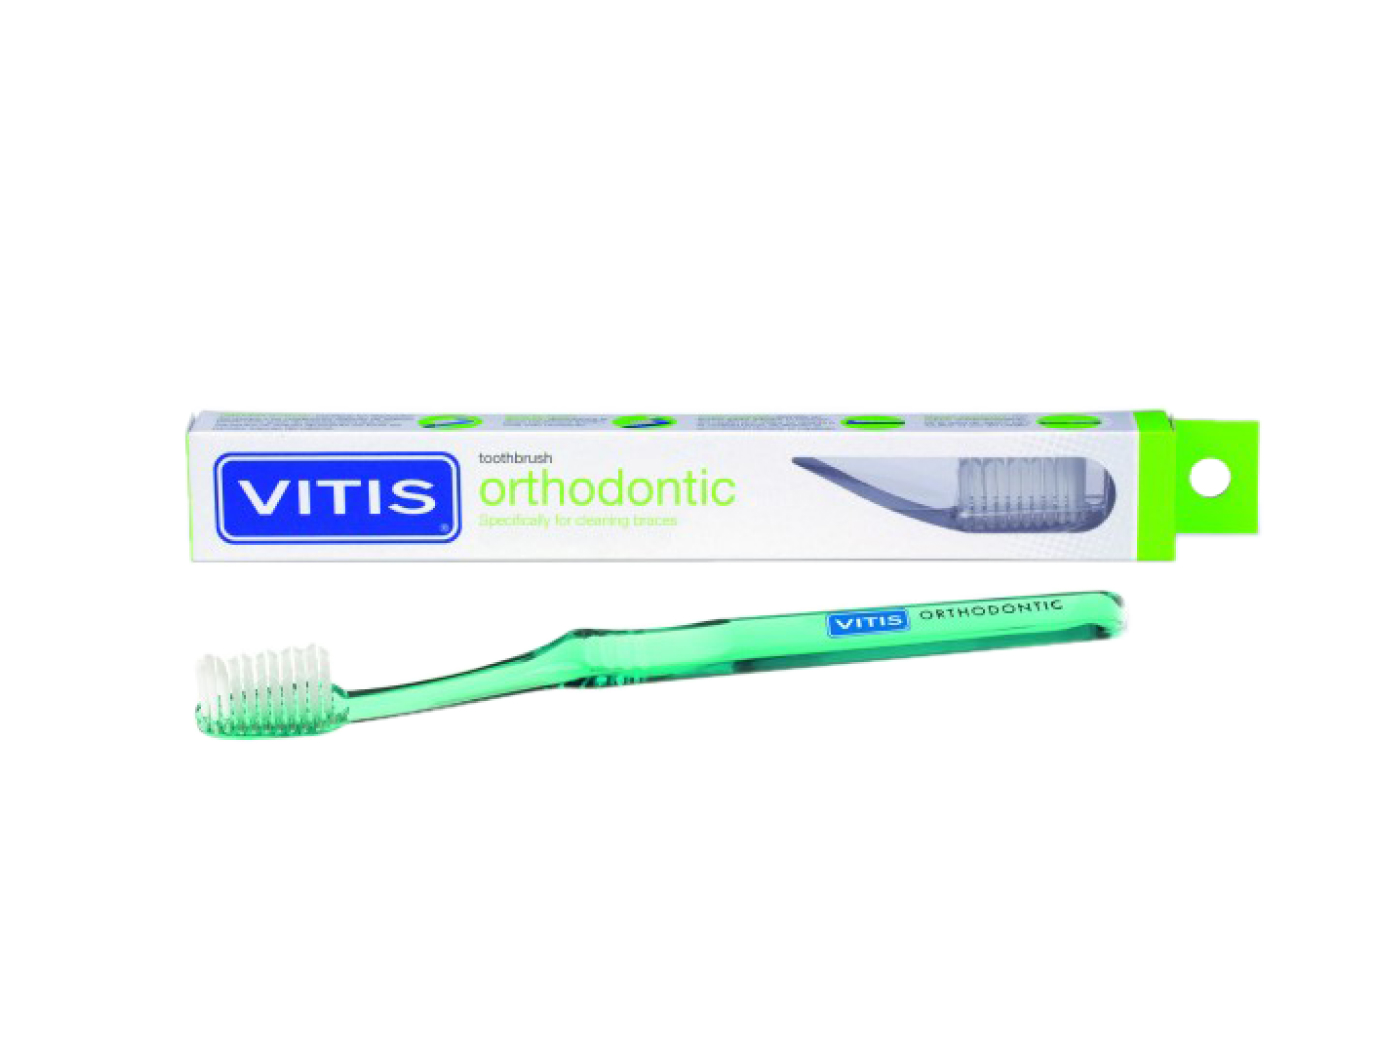 Vitis orthodontic зубная щетка для брекетов купить зубная щетка рич средней жесткости интердентал